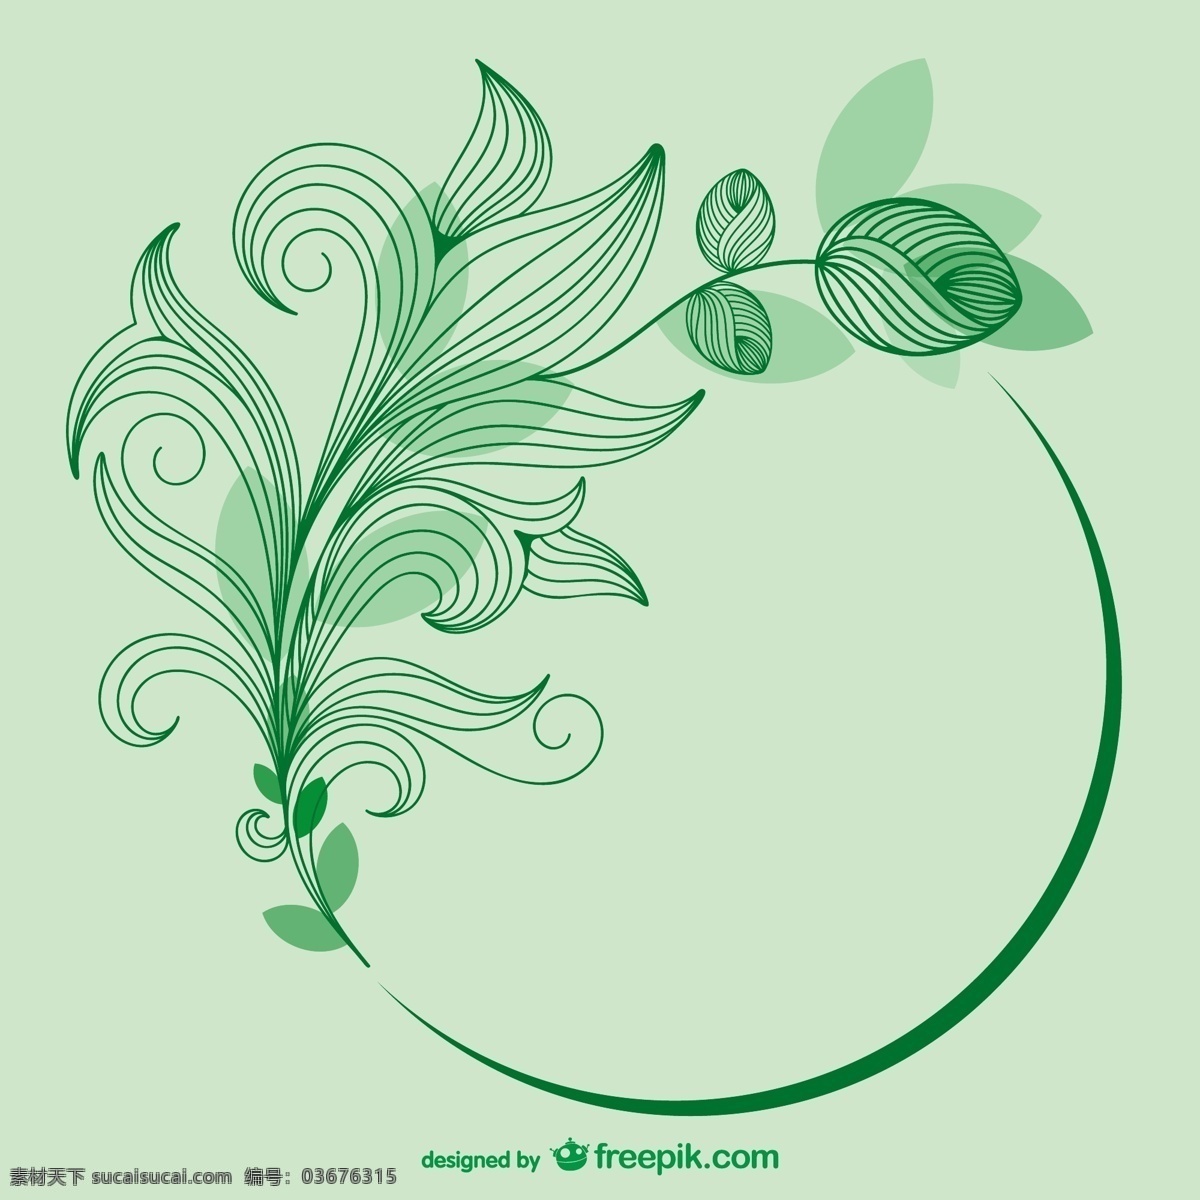 勾勒 出 绿色 叶子 背景 花卉 邀请 装饰 复古 自然 模板 线 艺术 绿色背景 壁纸 图形 漩涡 布局